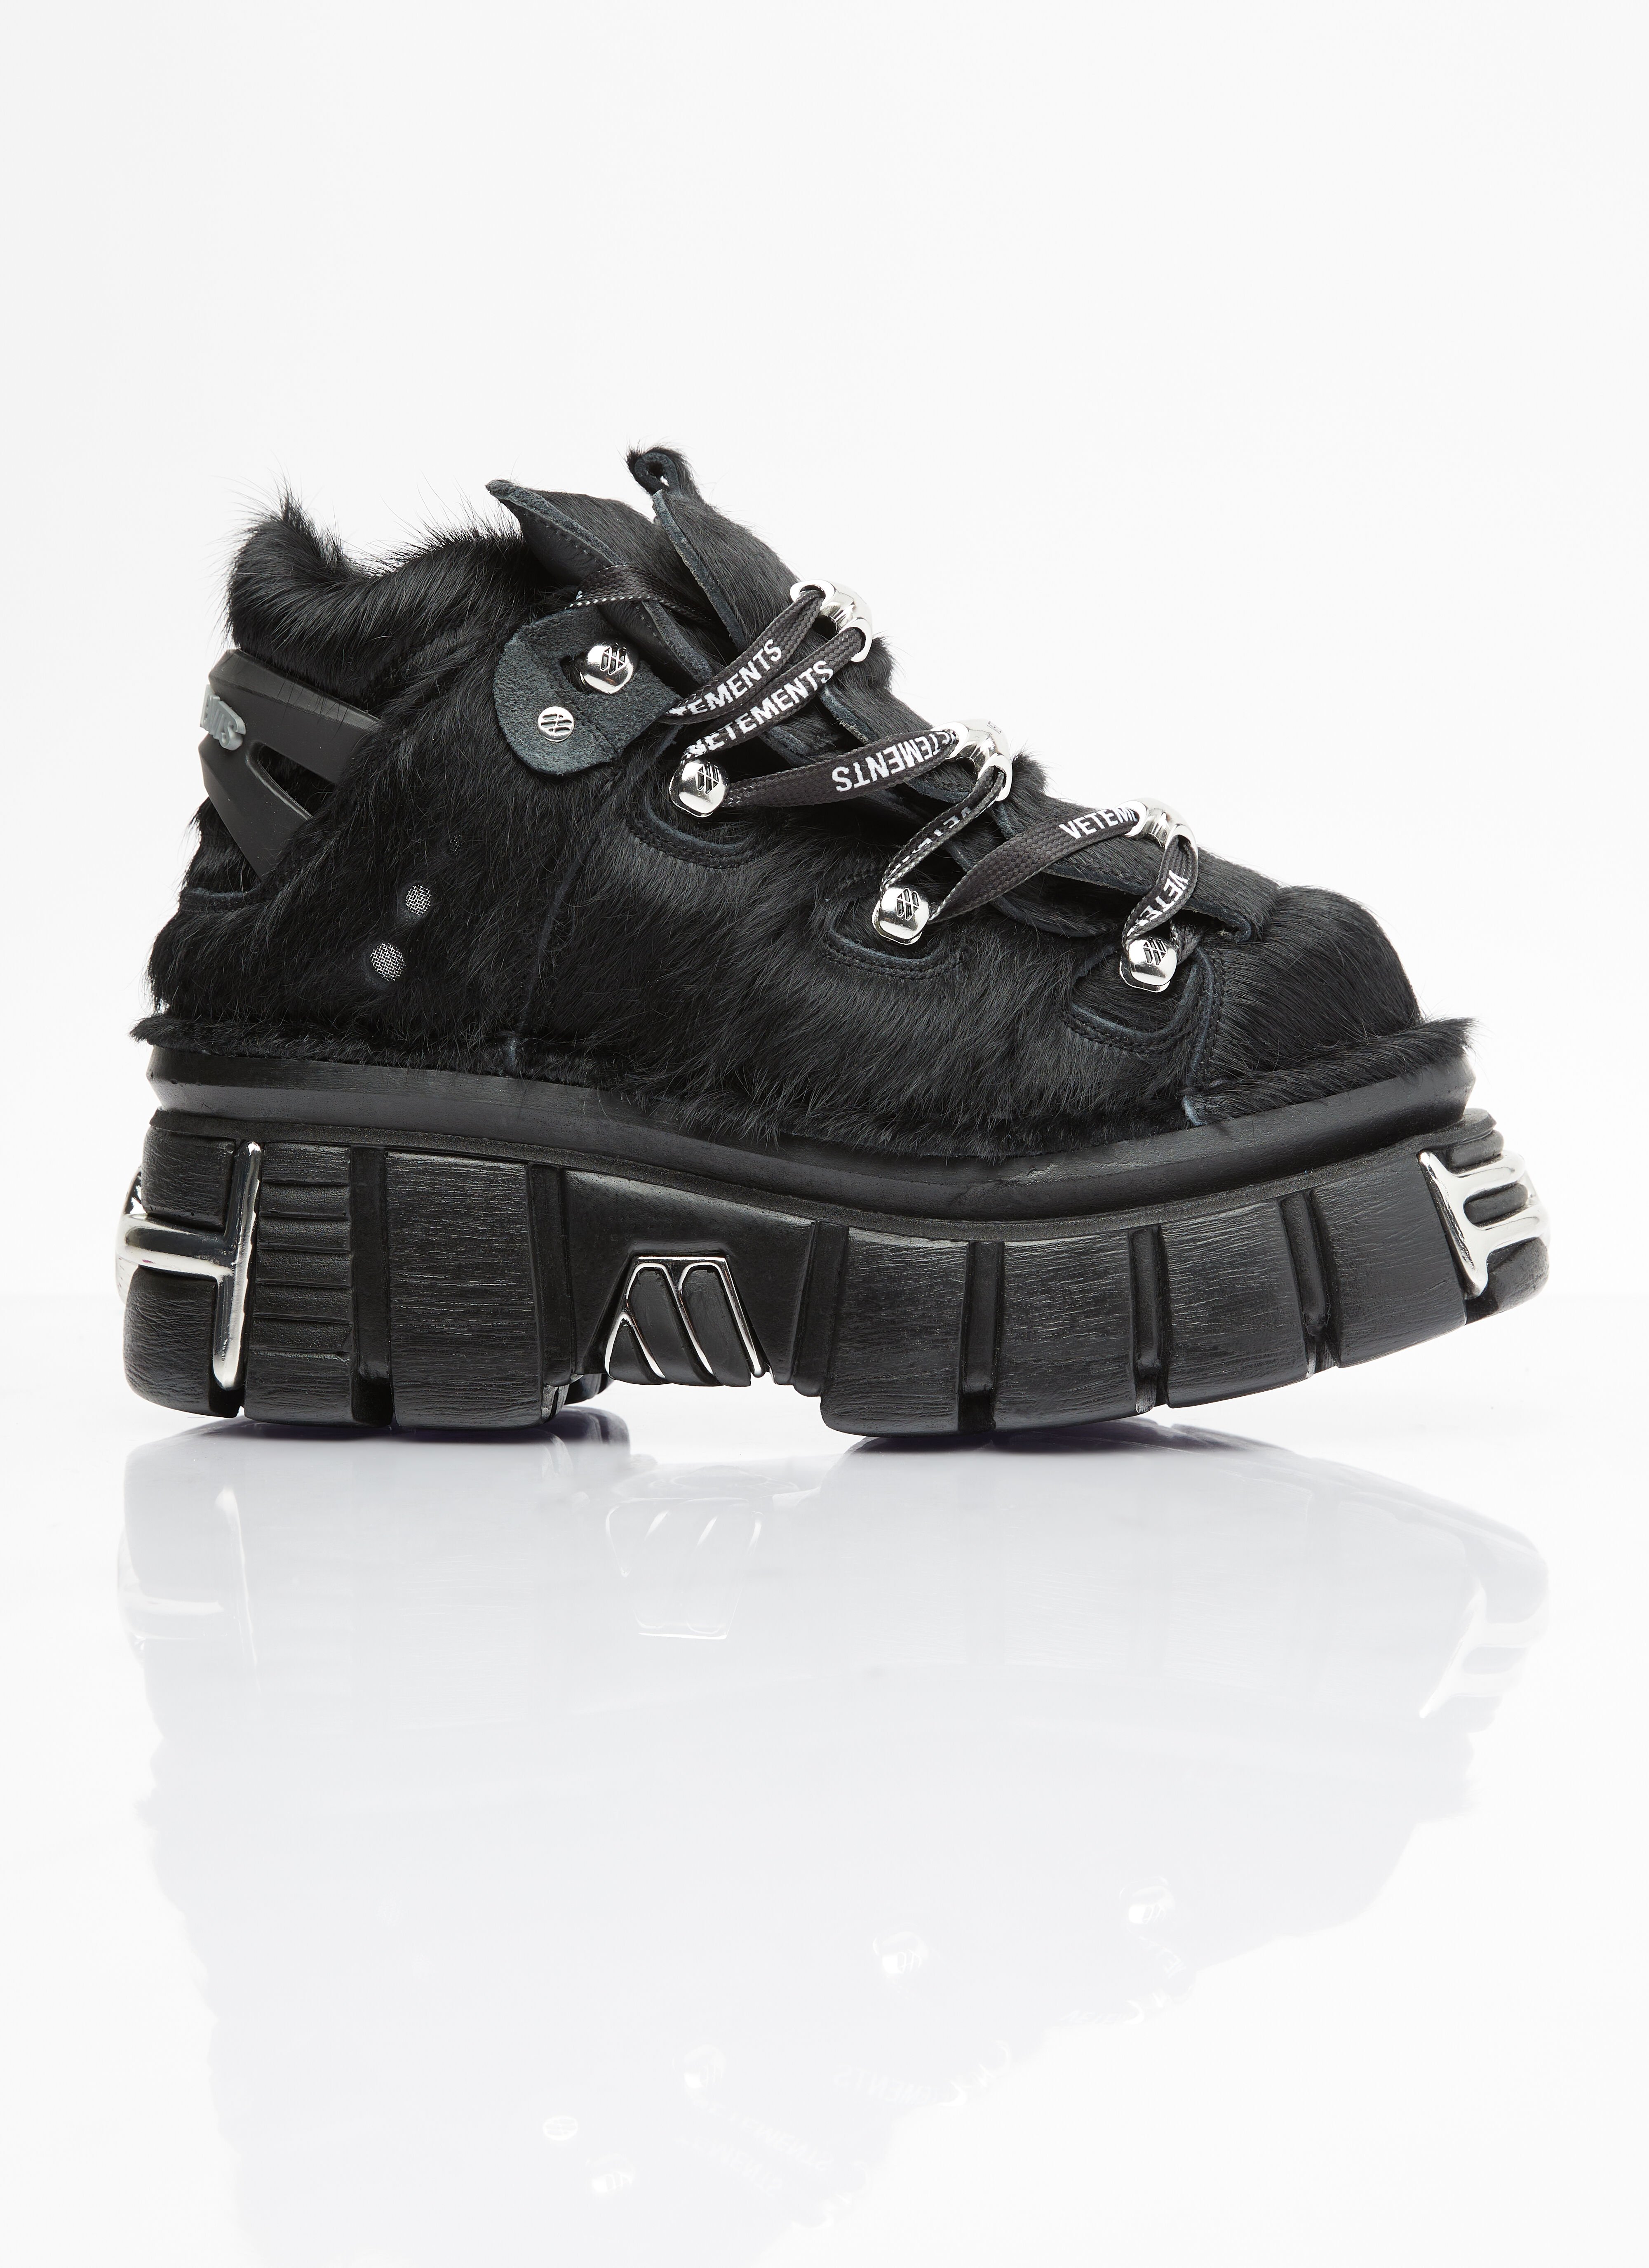 Marc Jacobs x New Rock Platform Sneakers White mcj0254014